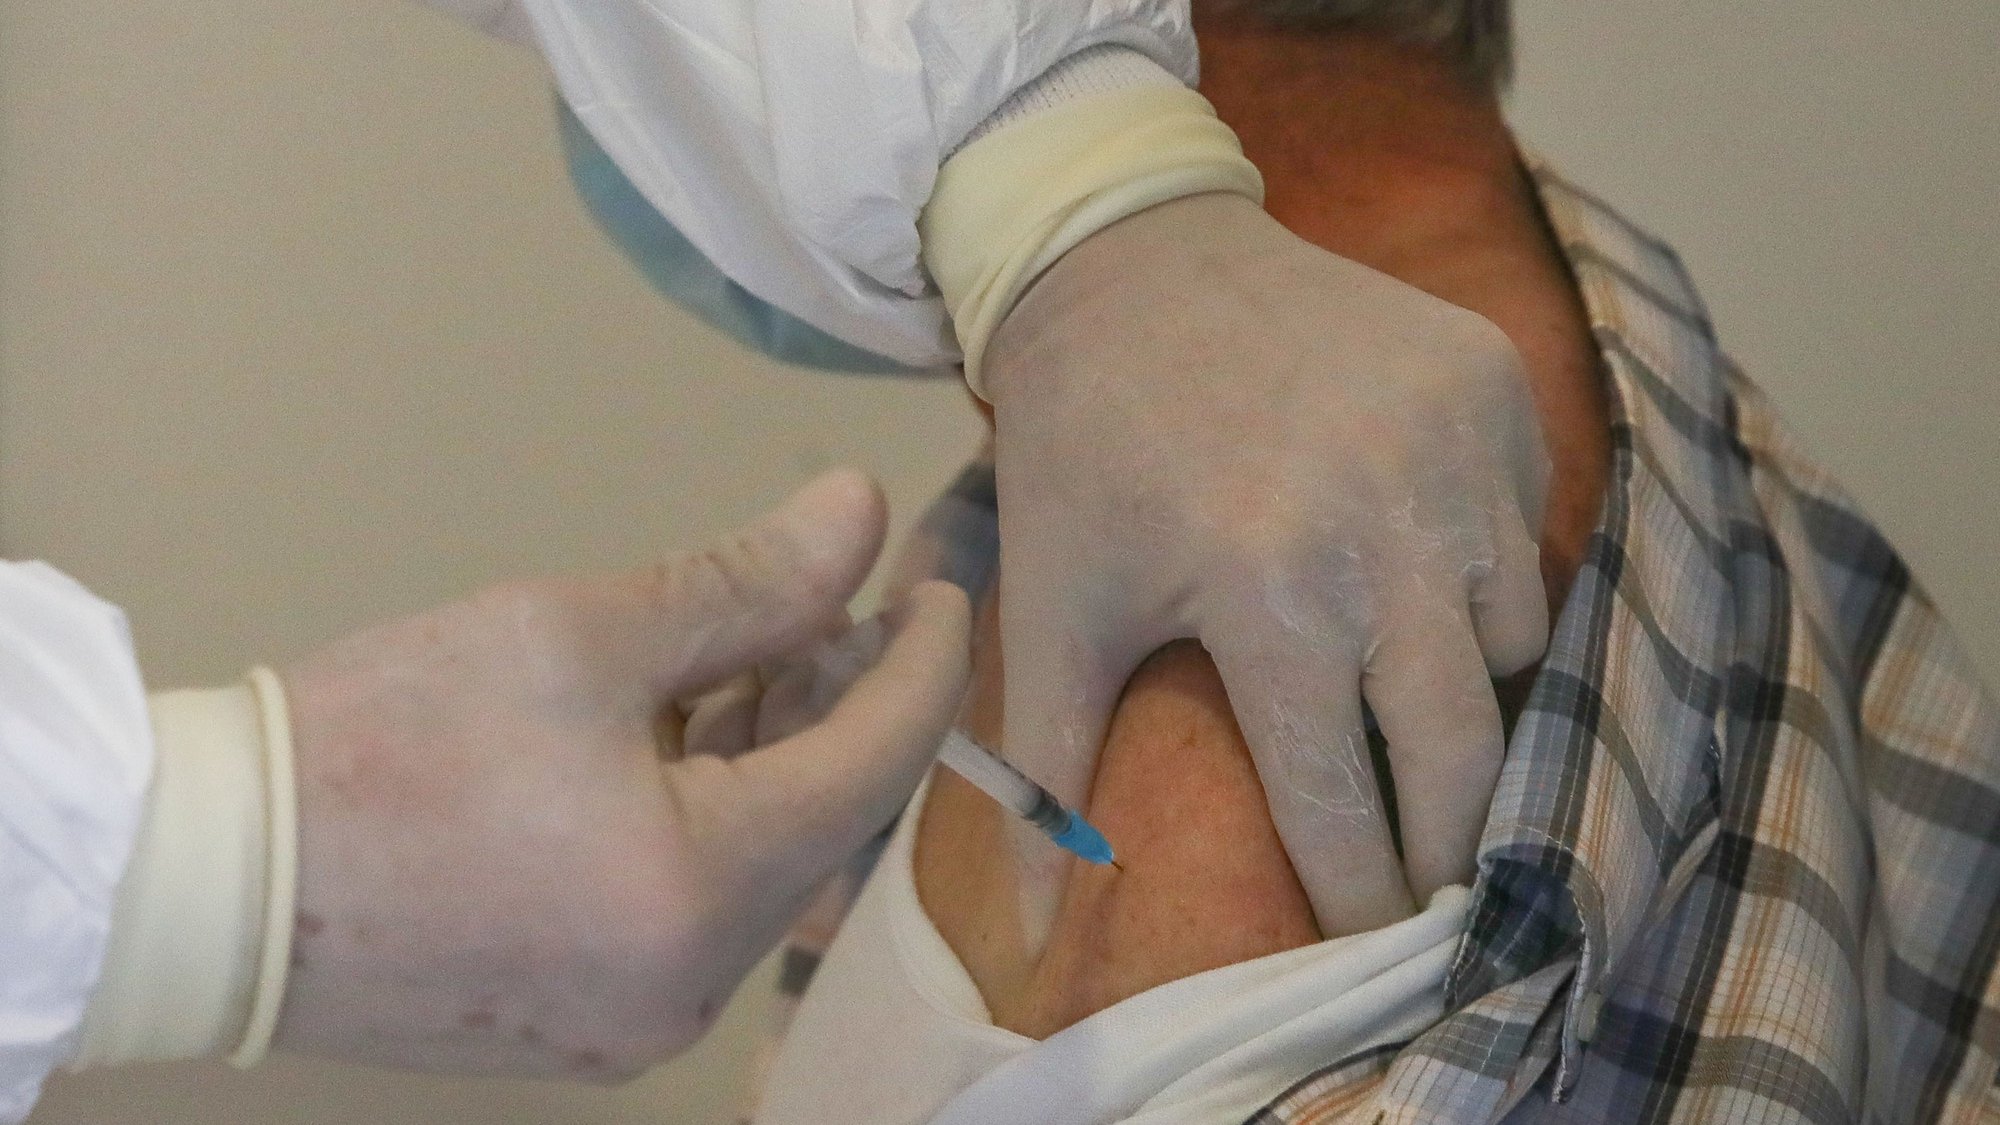 Um idoso é vacinado contra a covid-19 por um profissional de saúde no Centro de Vacinação de Arganil, durante o processo de vacinação na Antiga Cerâmica Arganilense, em Arganil, 19 de março de 2021. (ACOMPANHA TEXTO). PAULO NOVAIS/LUSA